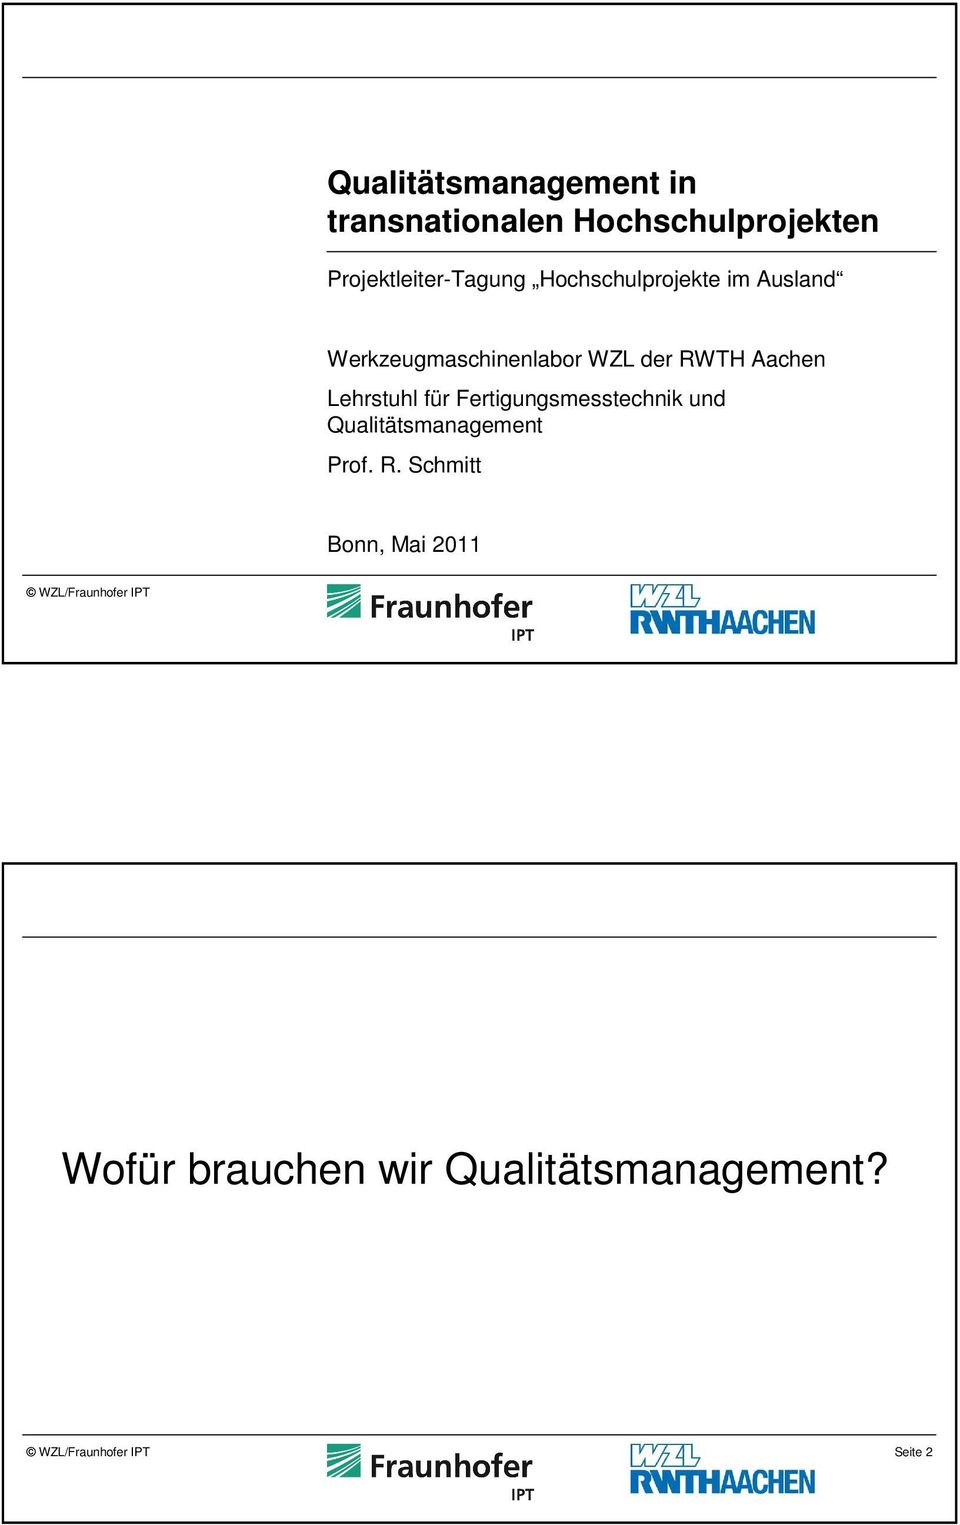 WZL der RWTH Aachen Lehrstuhl für Fertigungsmesstechnik und